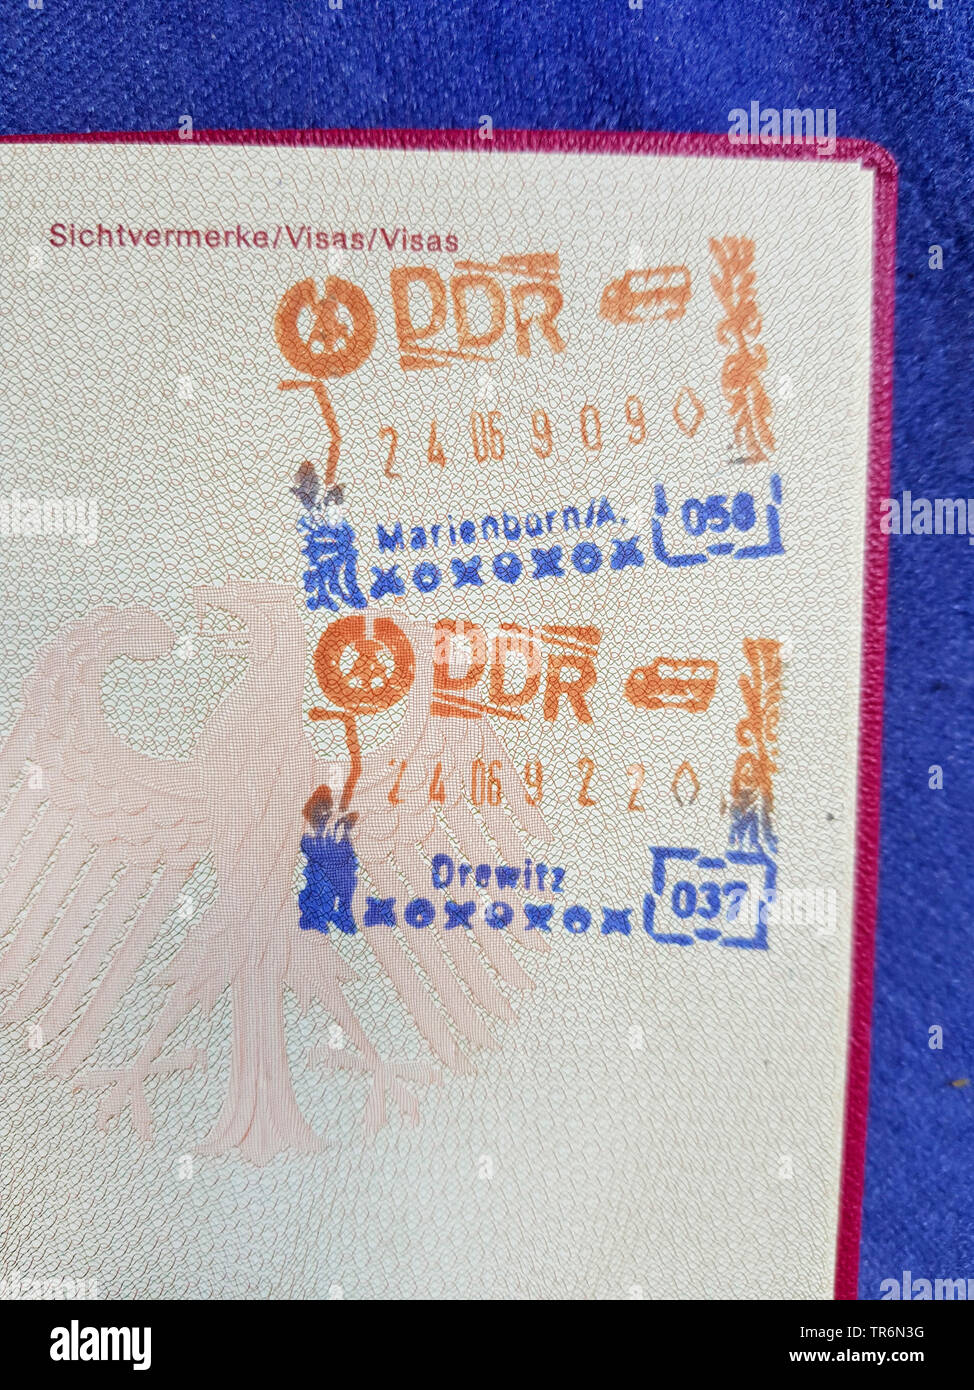 Stampos dans un passeport d'un voyage à travers la RDA, entrée de Marienborn, sortie à Drewitz, Allemagne Banque D'Images